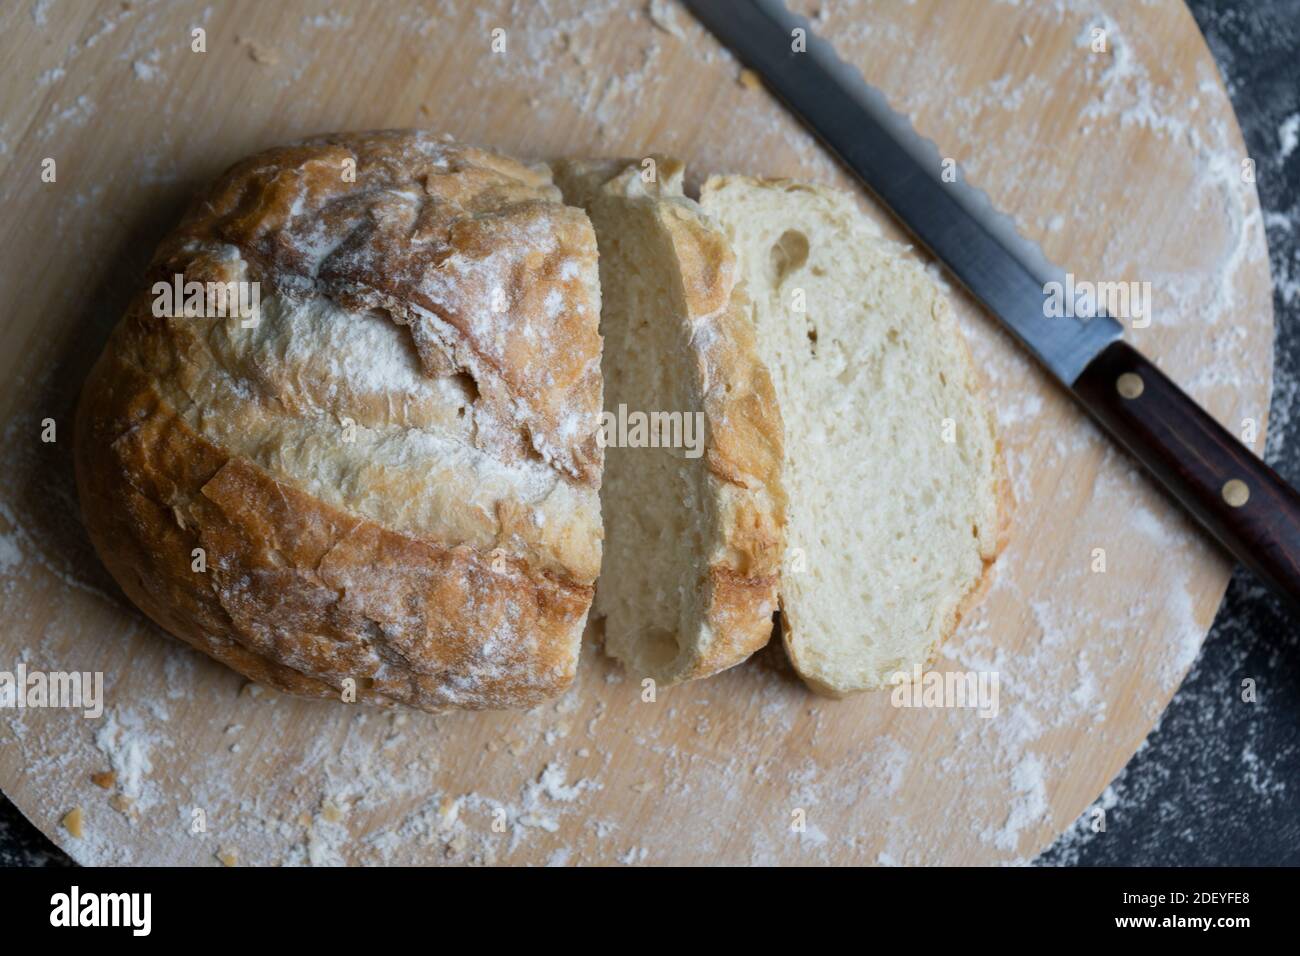 Geschnittenes Weizenbrot mit Mehl und Messer auf Holzbrett.Rustikale Bäckerei, gesunde Ernährung Konzept. Stockfoto